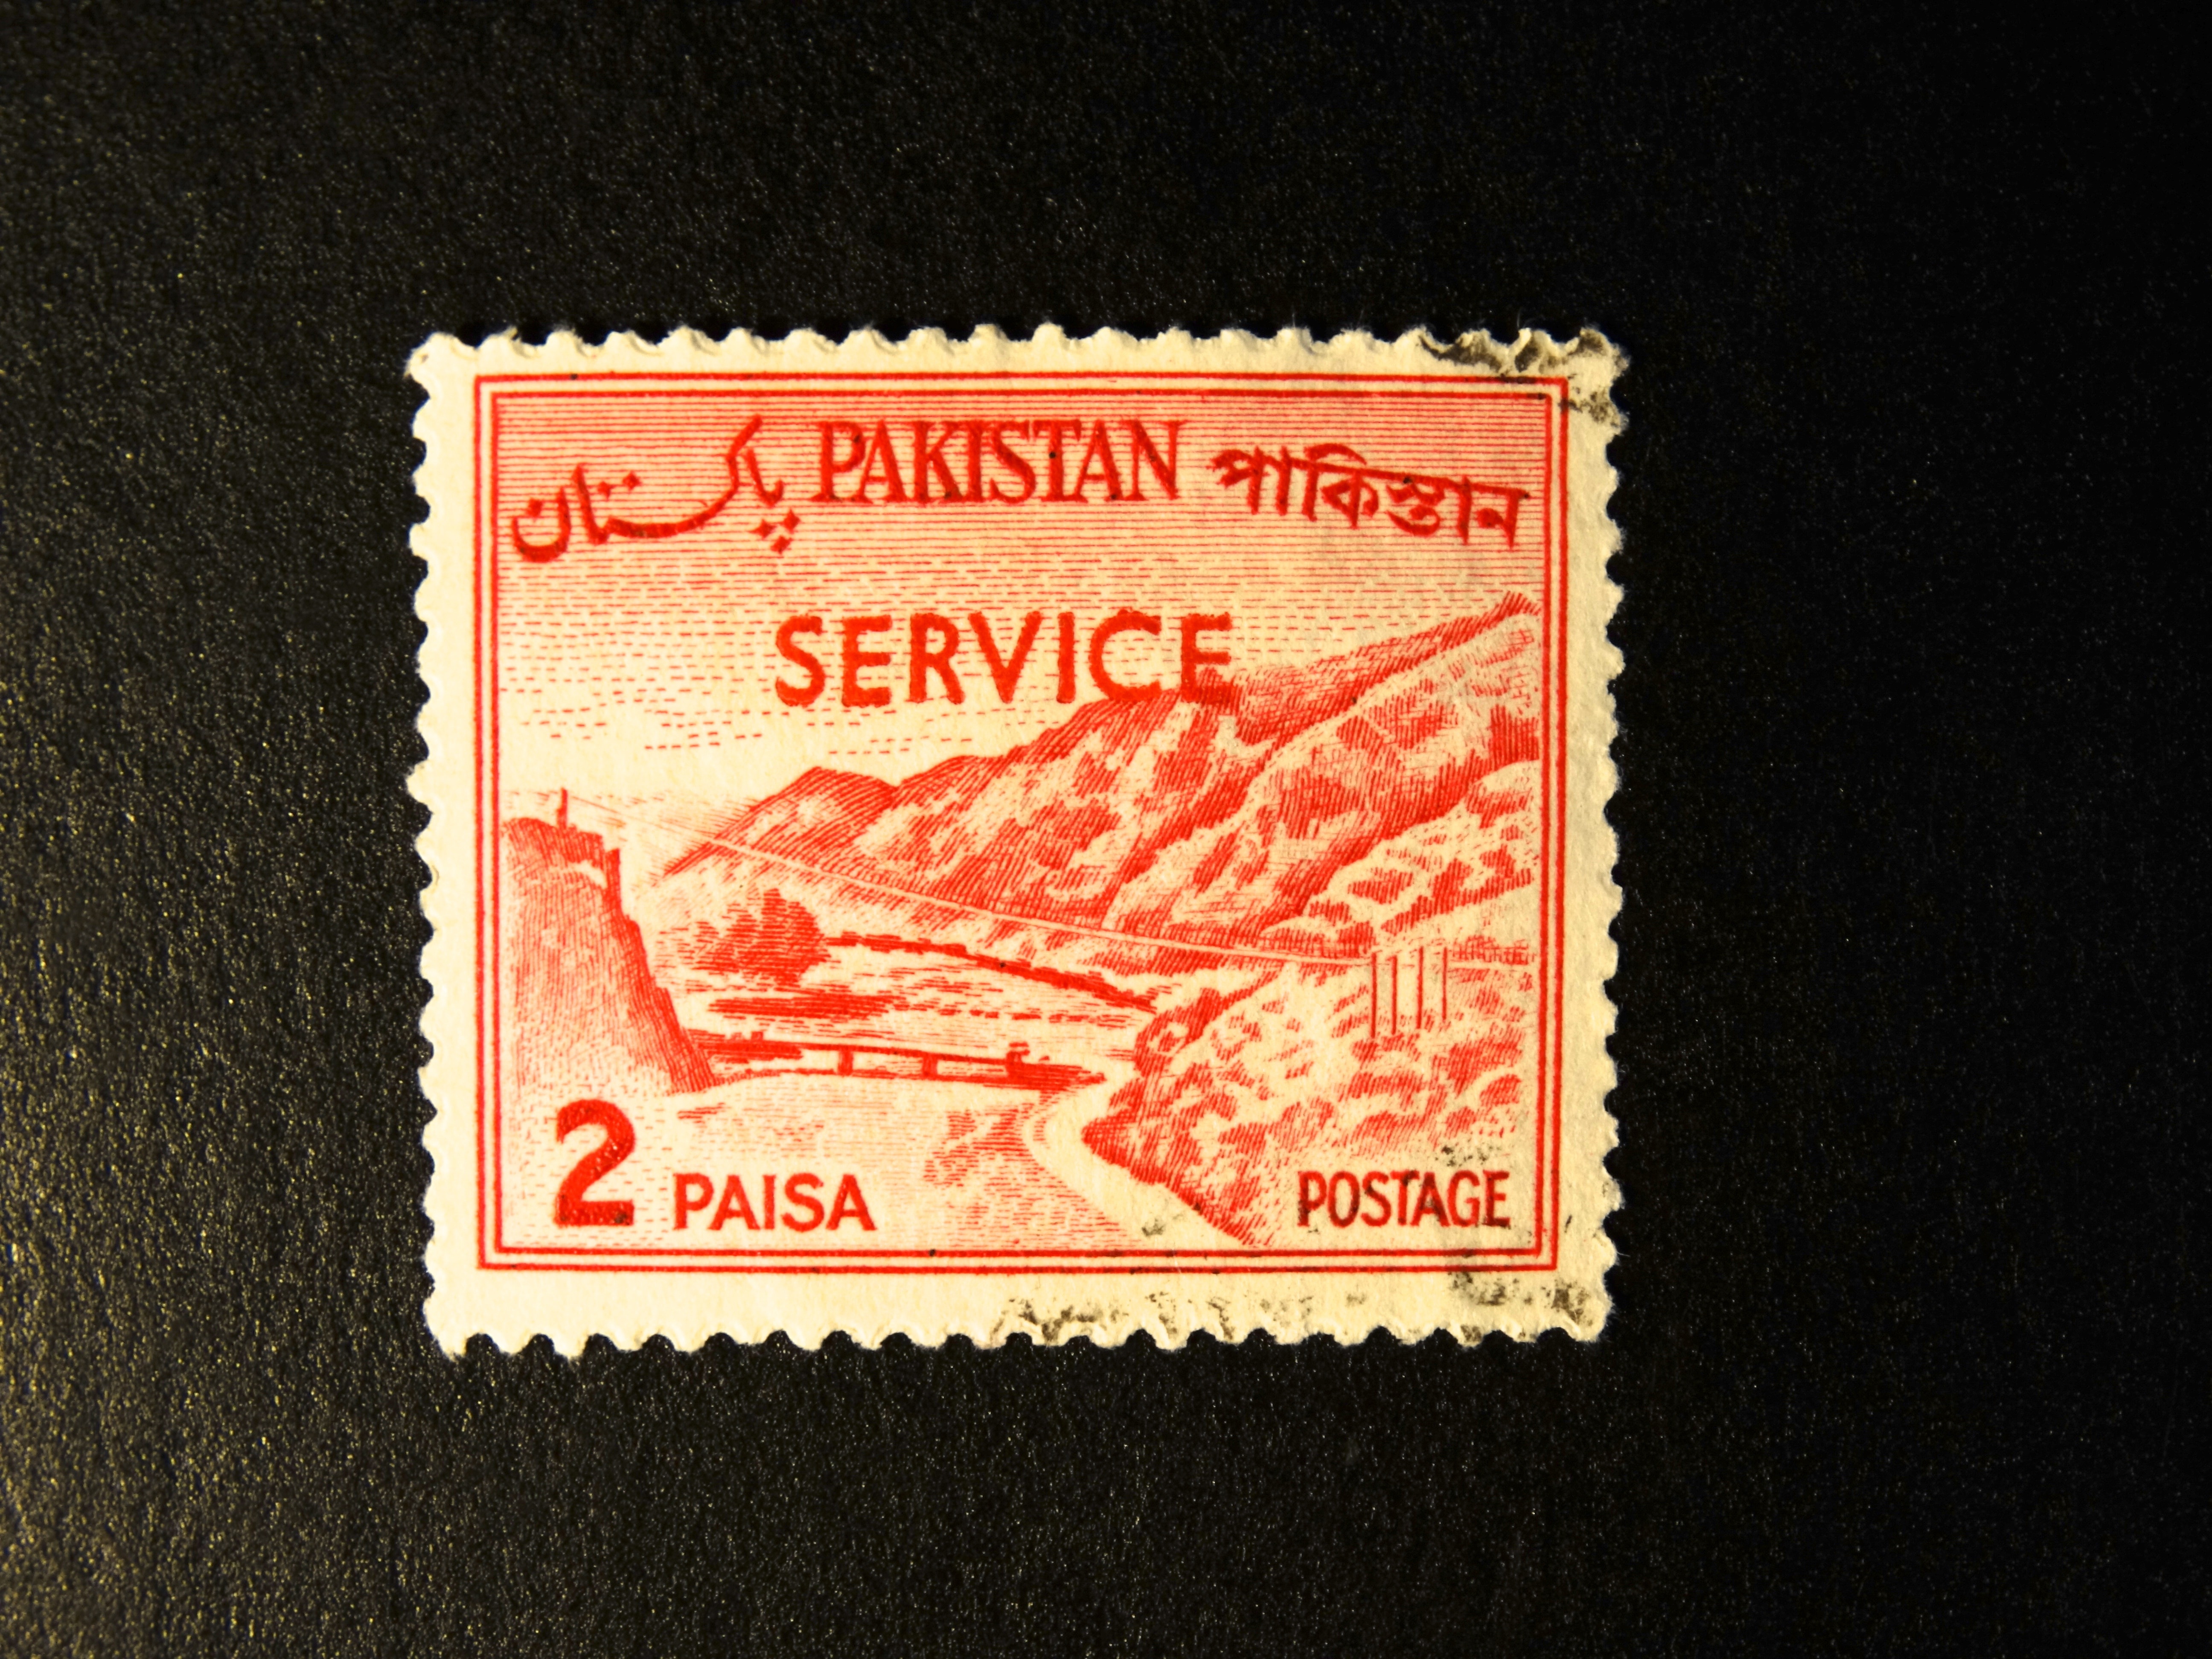 Pakistan Service Paisa Postage Image